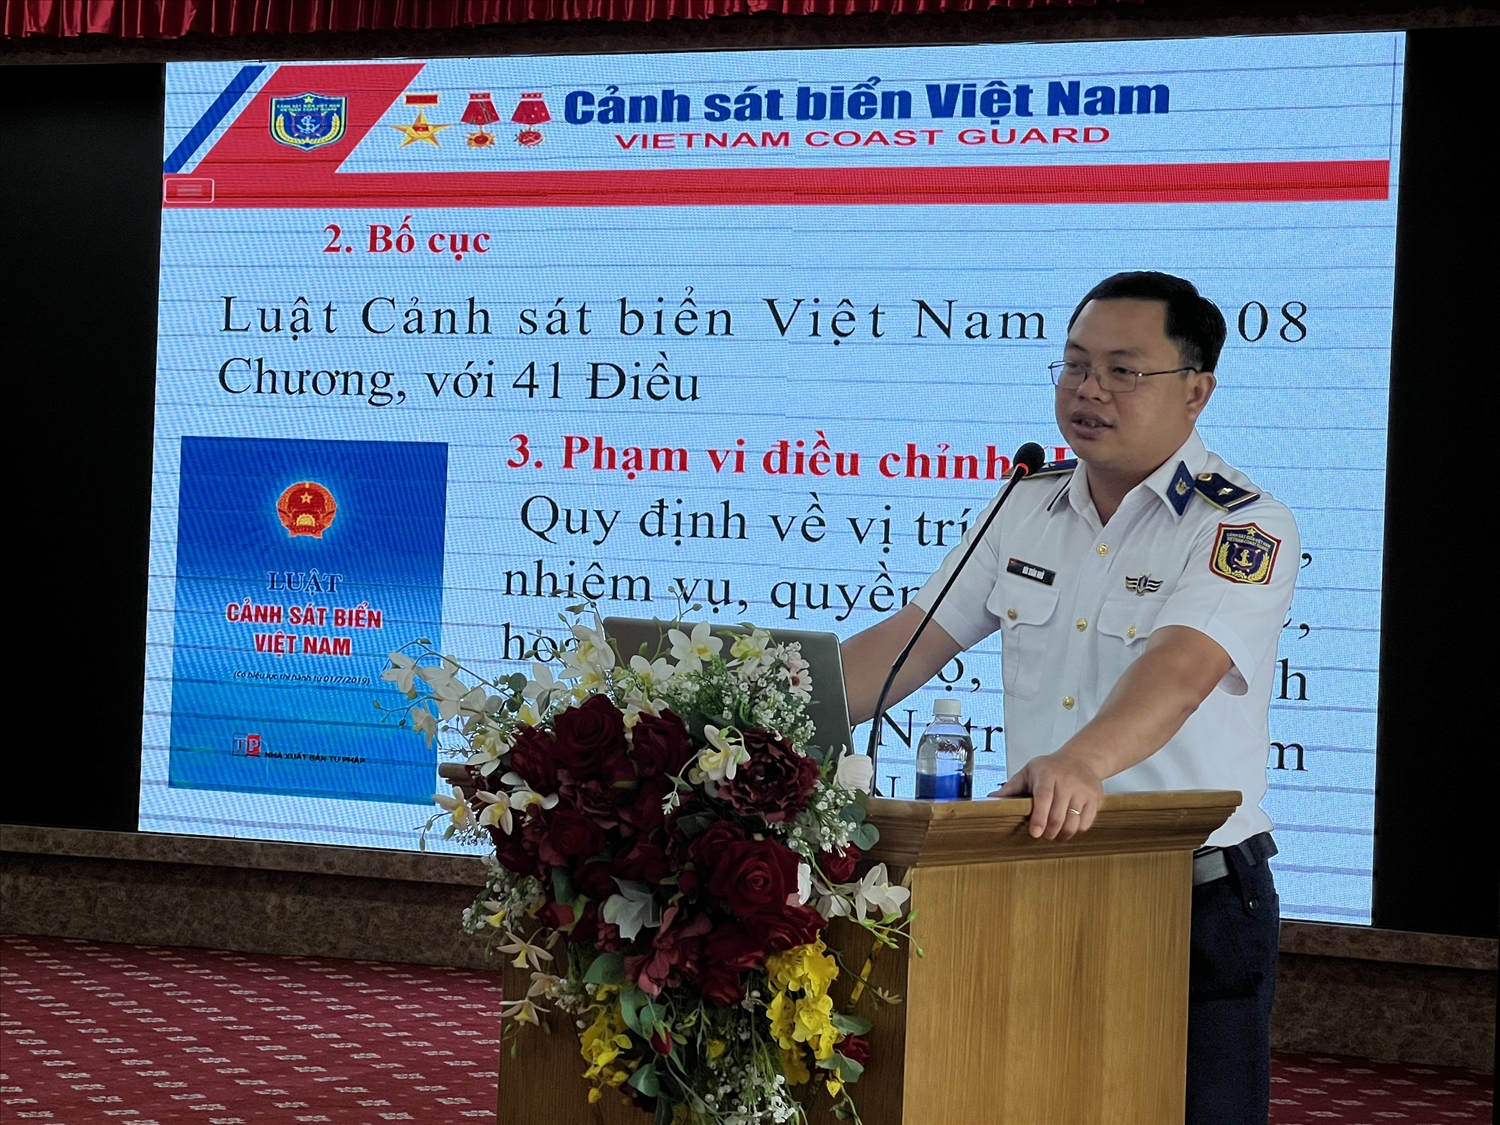 Thiếu tá Bùi Xuân Nhớ, Trợ lý Pháp chế phòng Pháp luật Bộ Tư lệnh Vùng Cảnh sát biển 4 tuyên truyền Luật Cảnh sát biển Việt Nam.